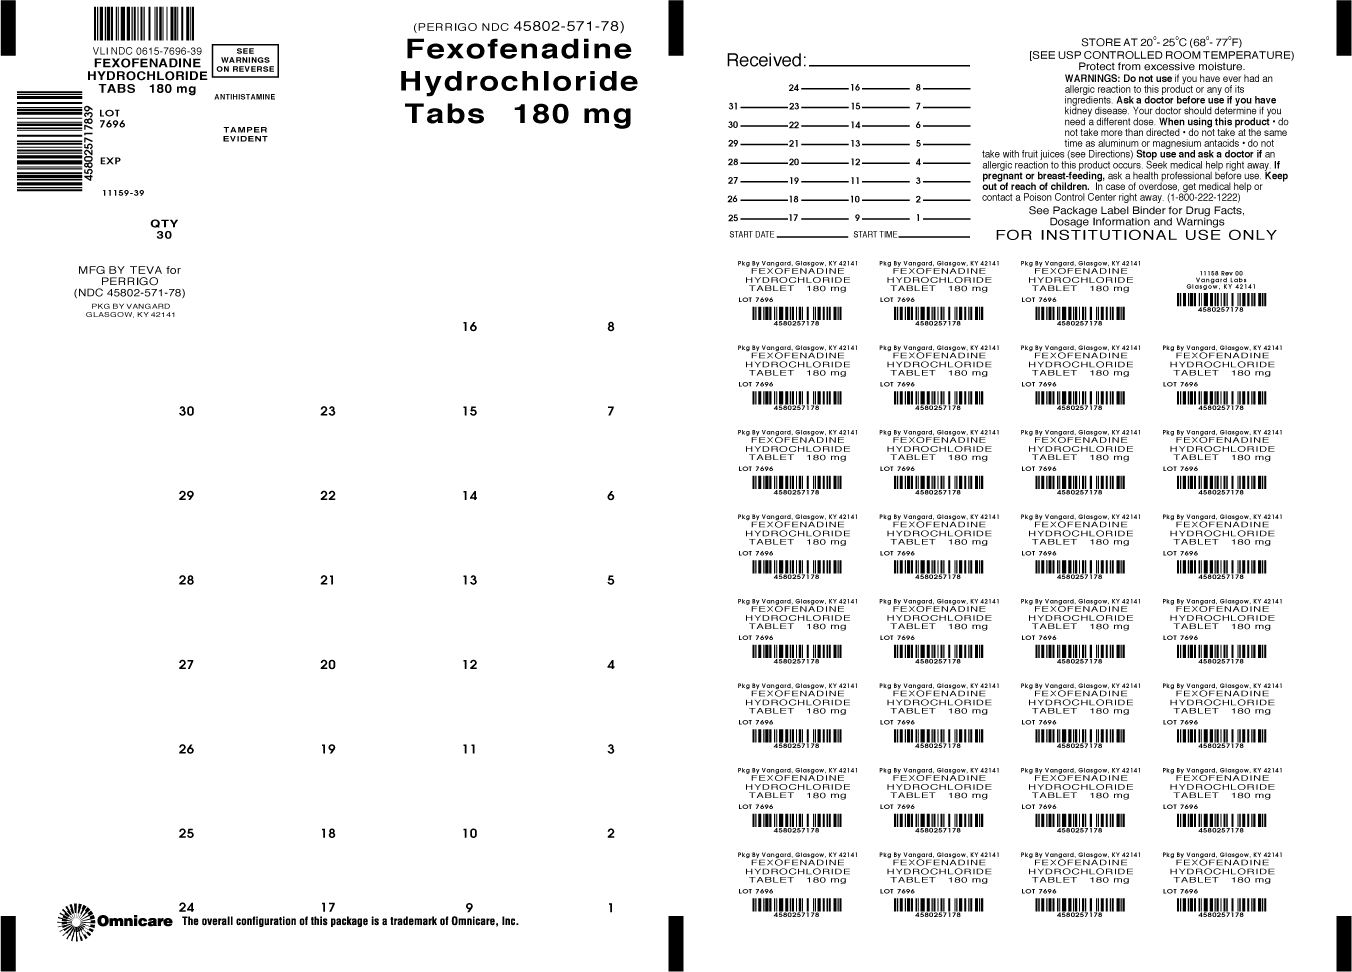 Principal Display Panel-Fexofenadine HCI Tablets 180mg